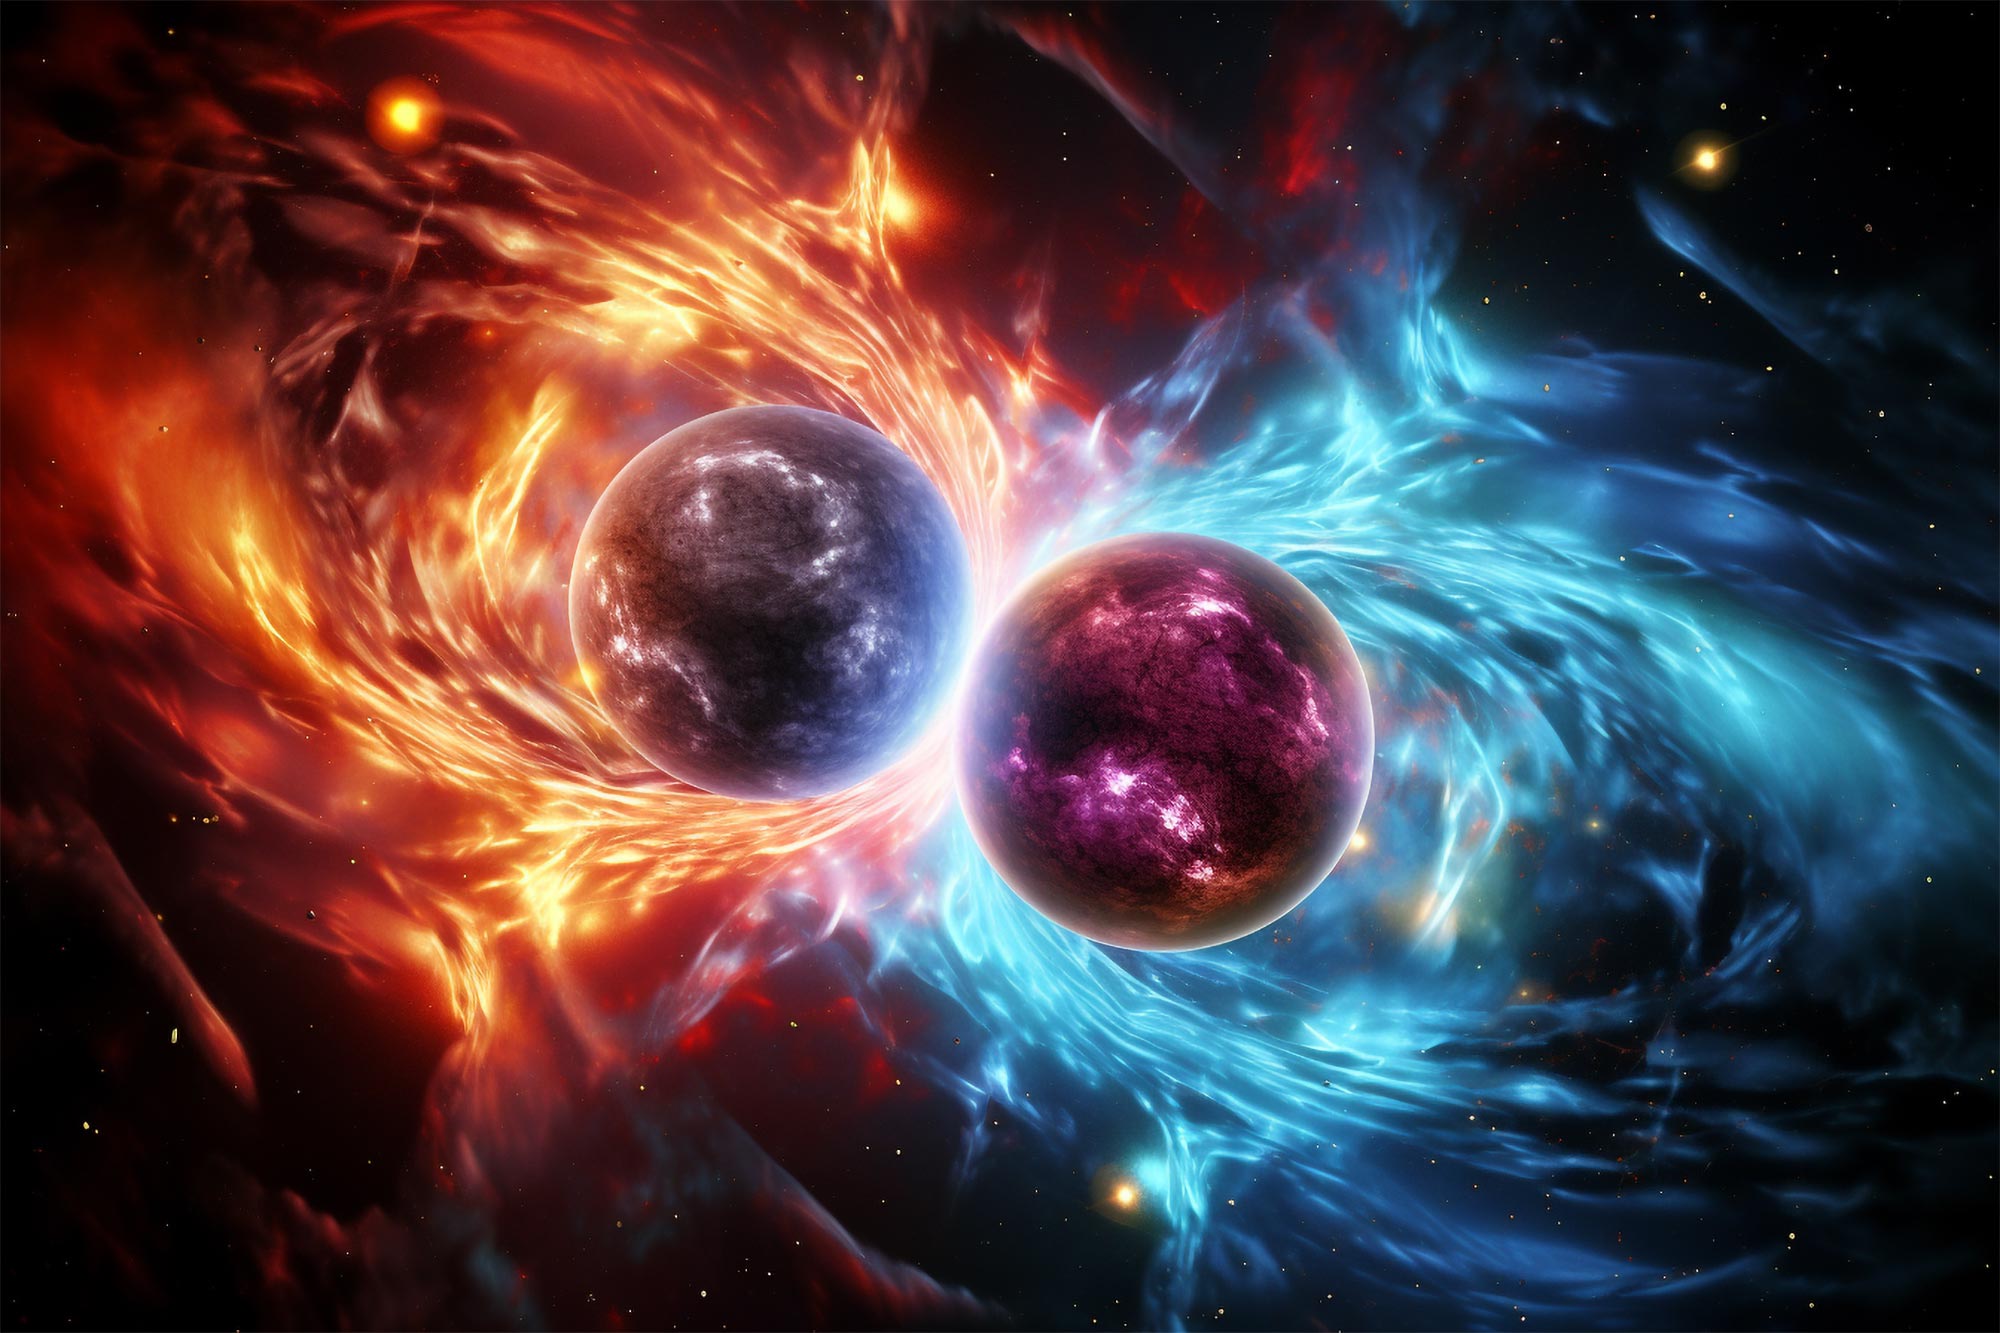 Kollisionen von Neutronensternen geben Aufschluss über die Expansion des Universums